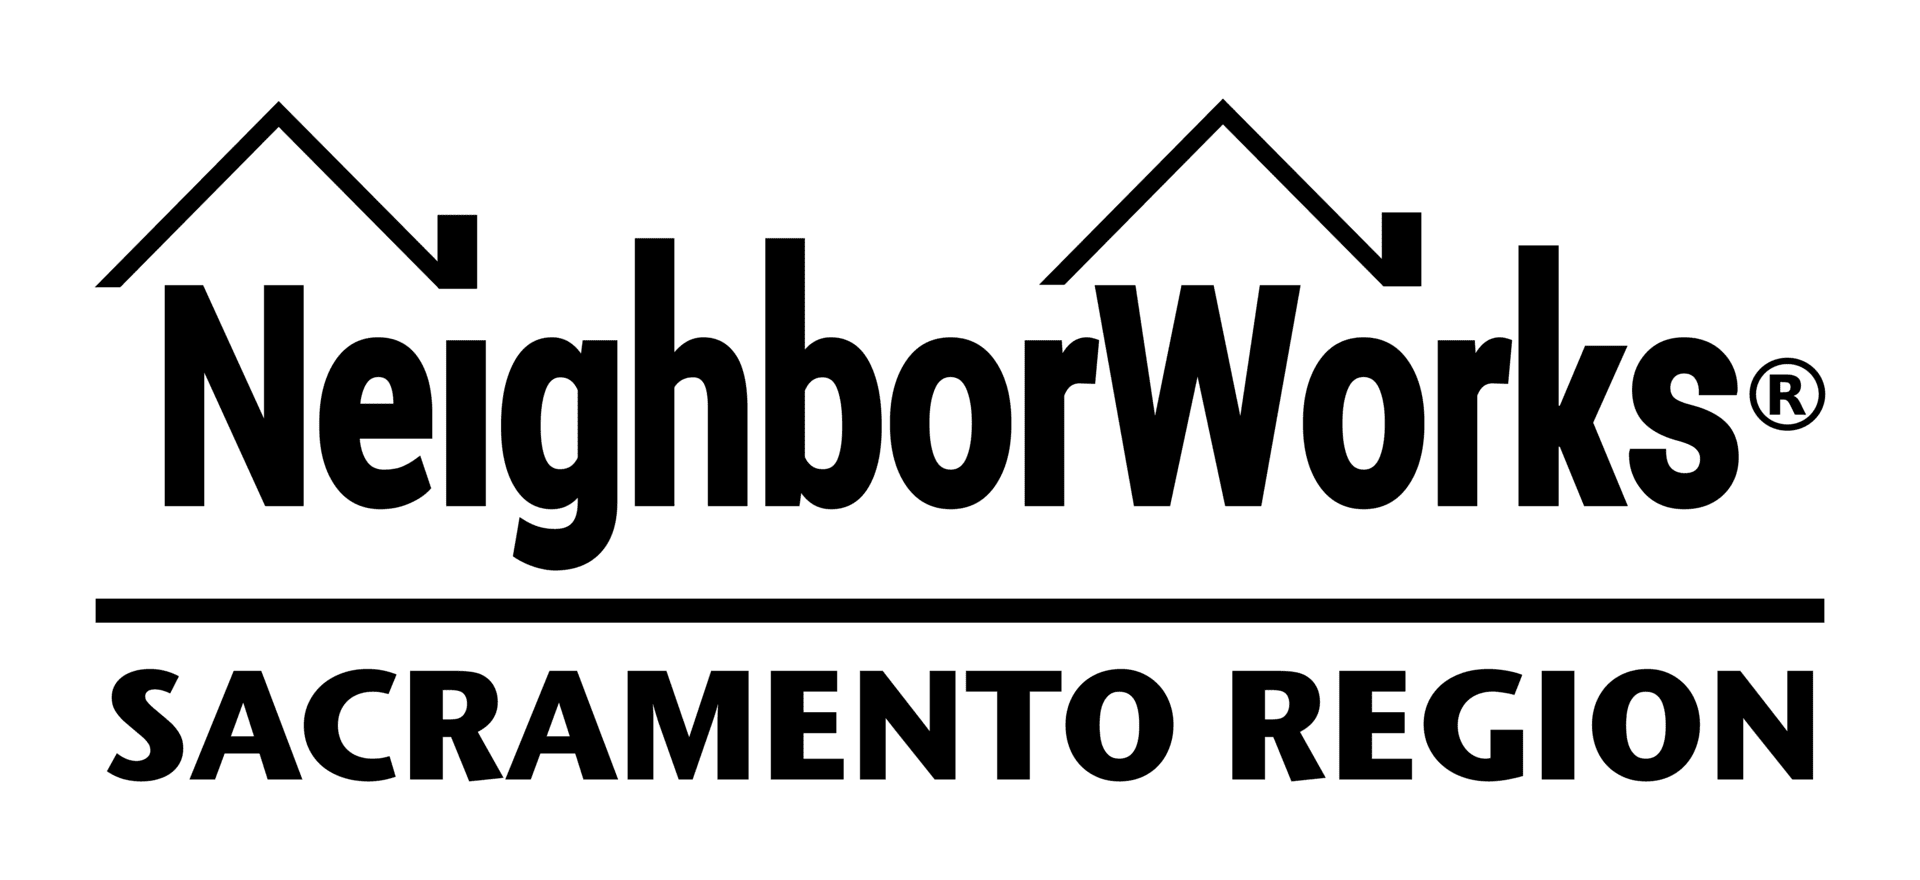 Member Welcome: NeighborWorks Sacramento Region